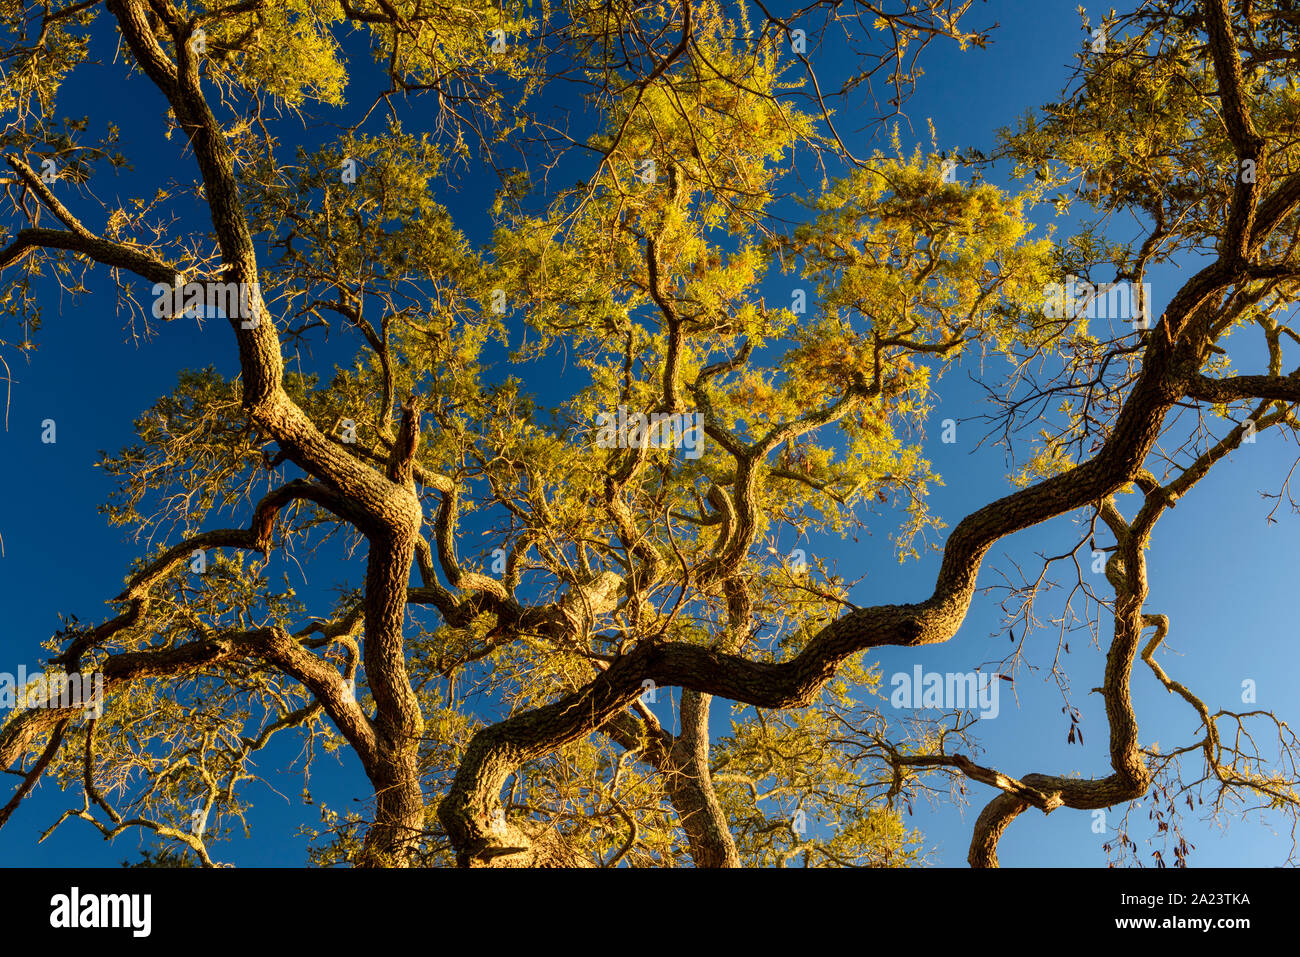 Oak tree and setting moon, St. Marks National Wildlife Refuge, Florida, USA Stock Photo